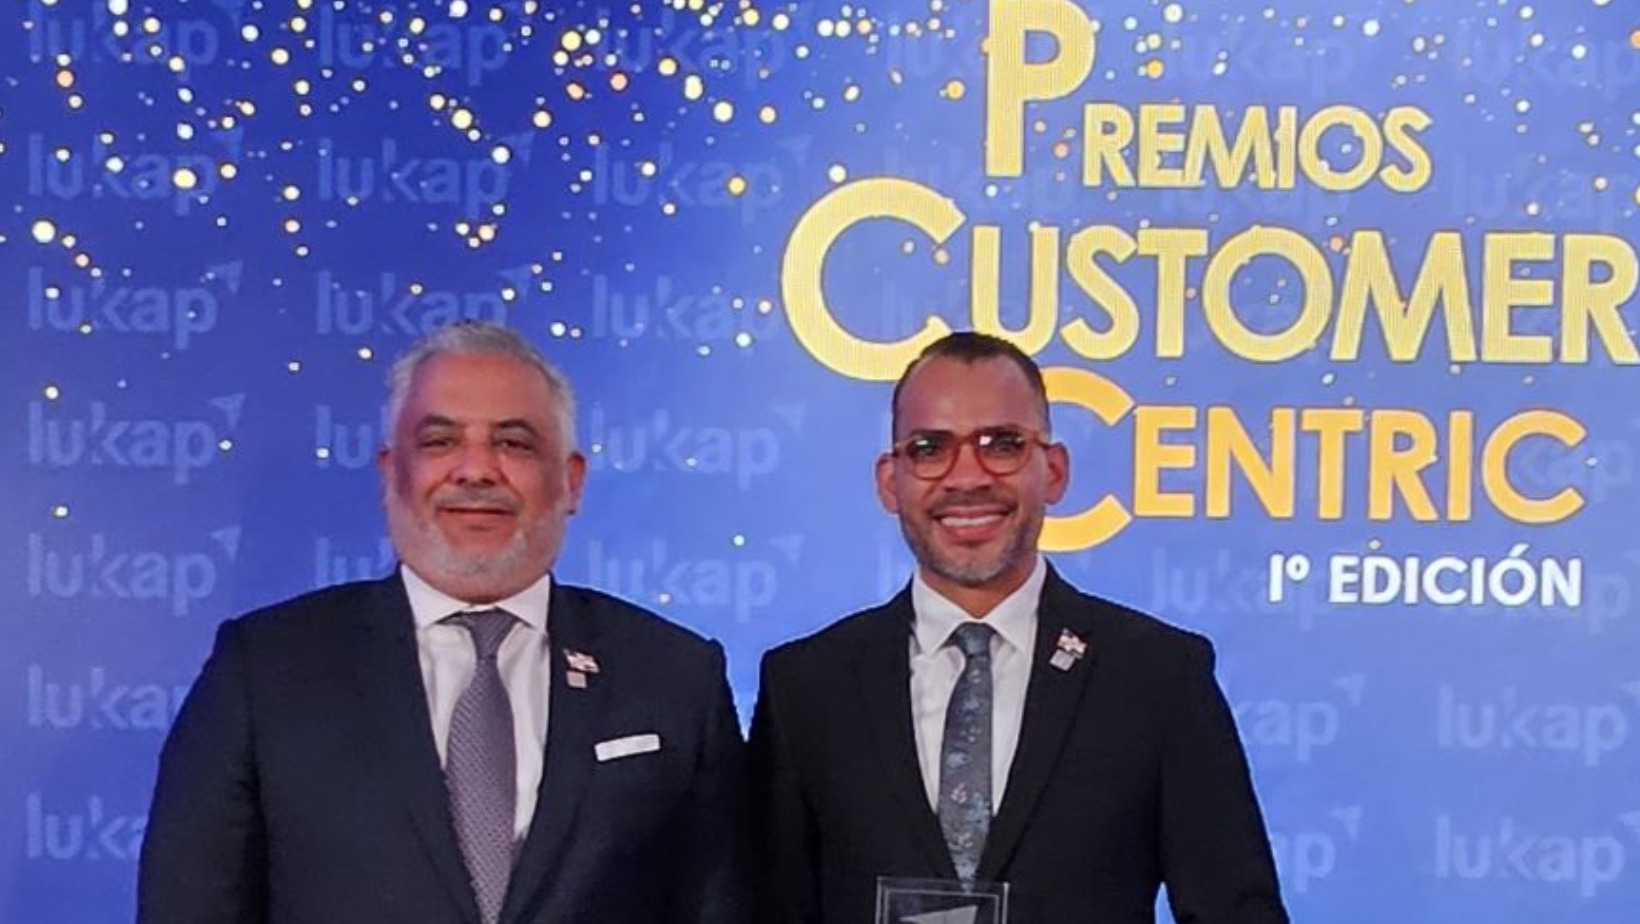 Seguros Reservas, primera aseguradora en América Latina galardonada en los premios Customer Centric